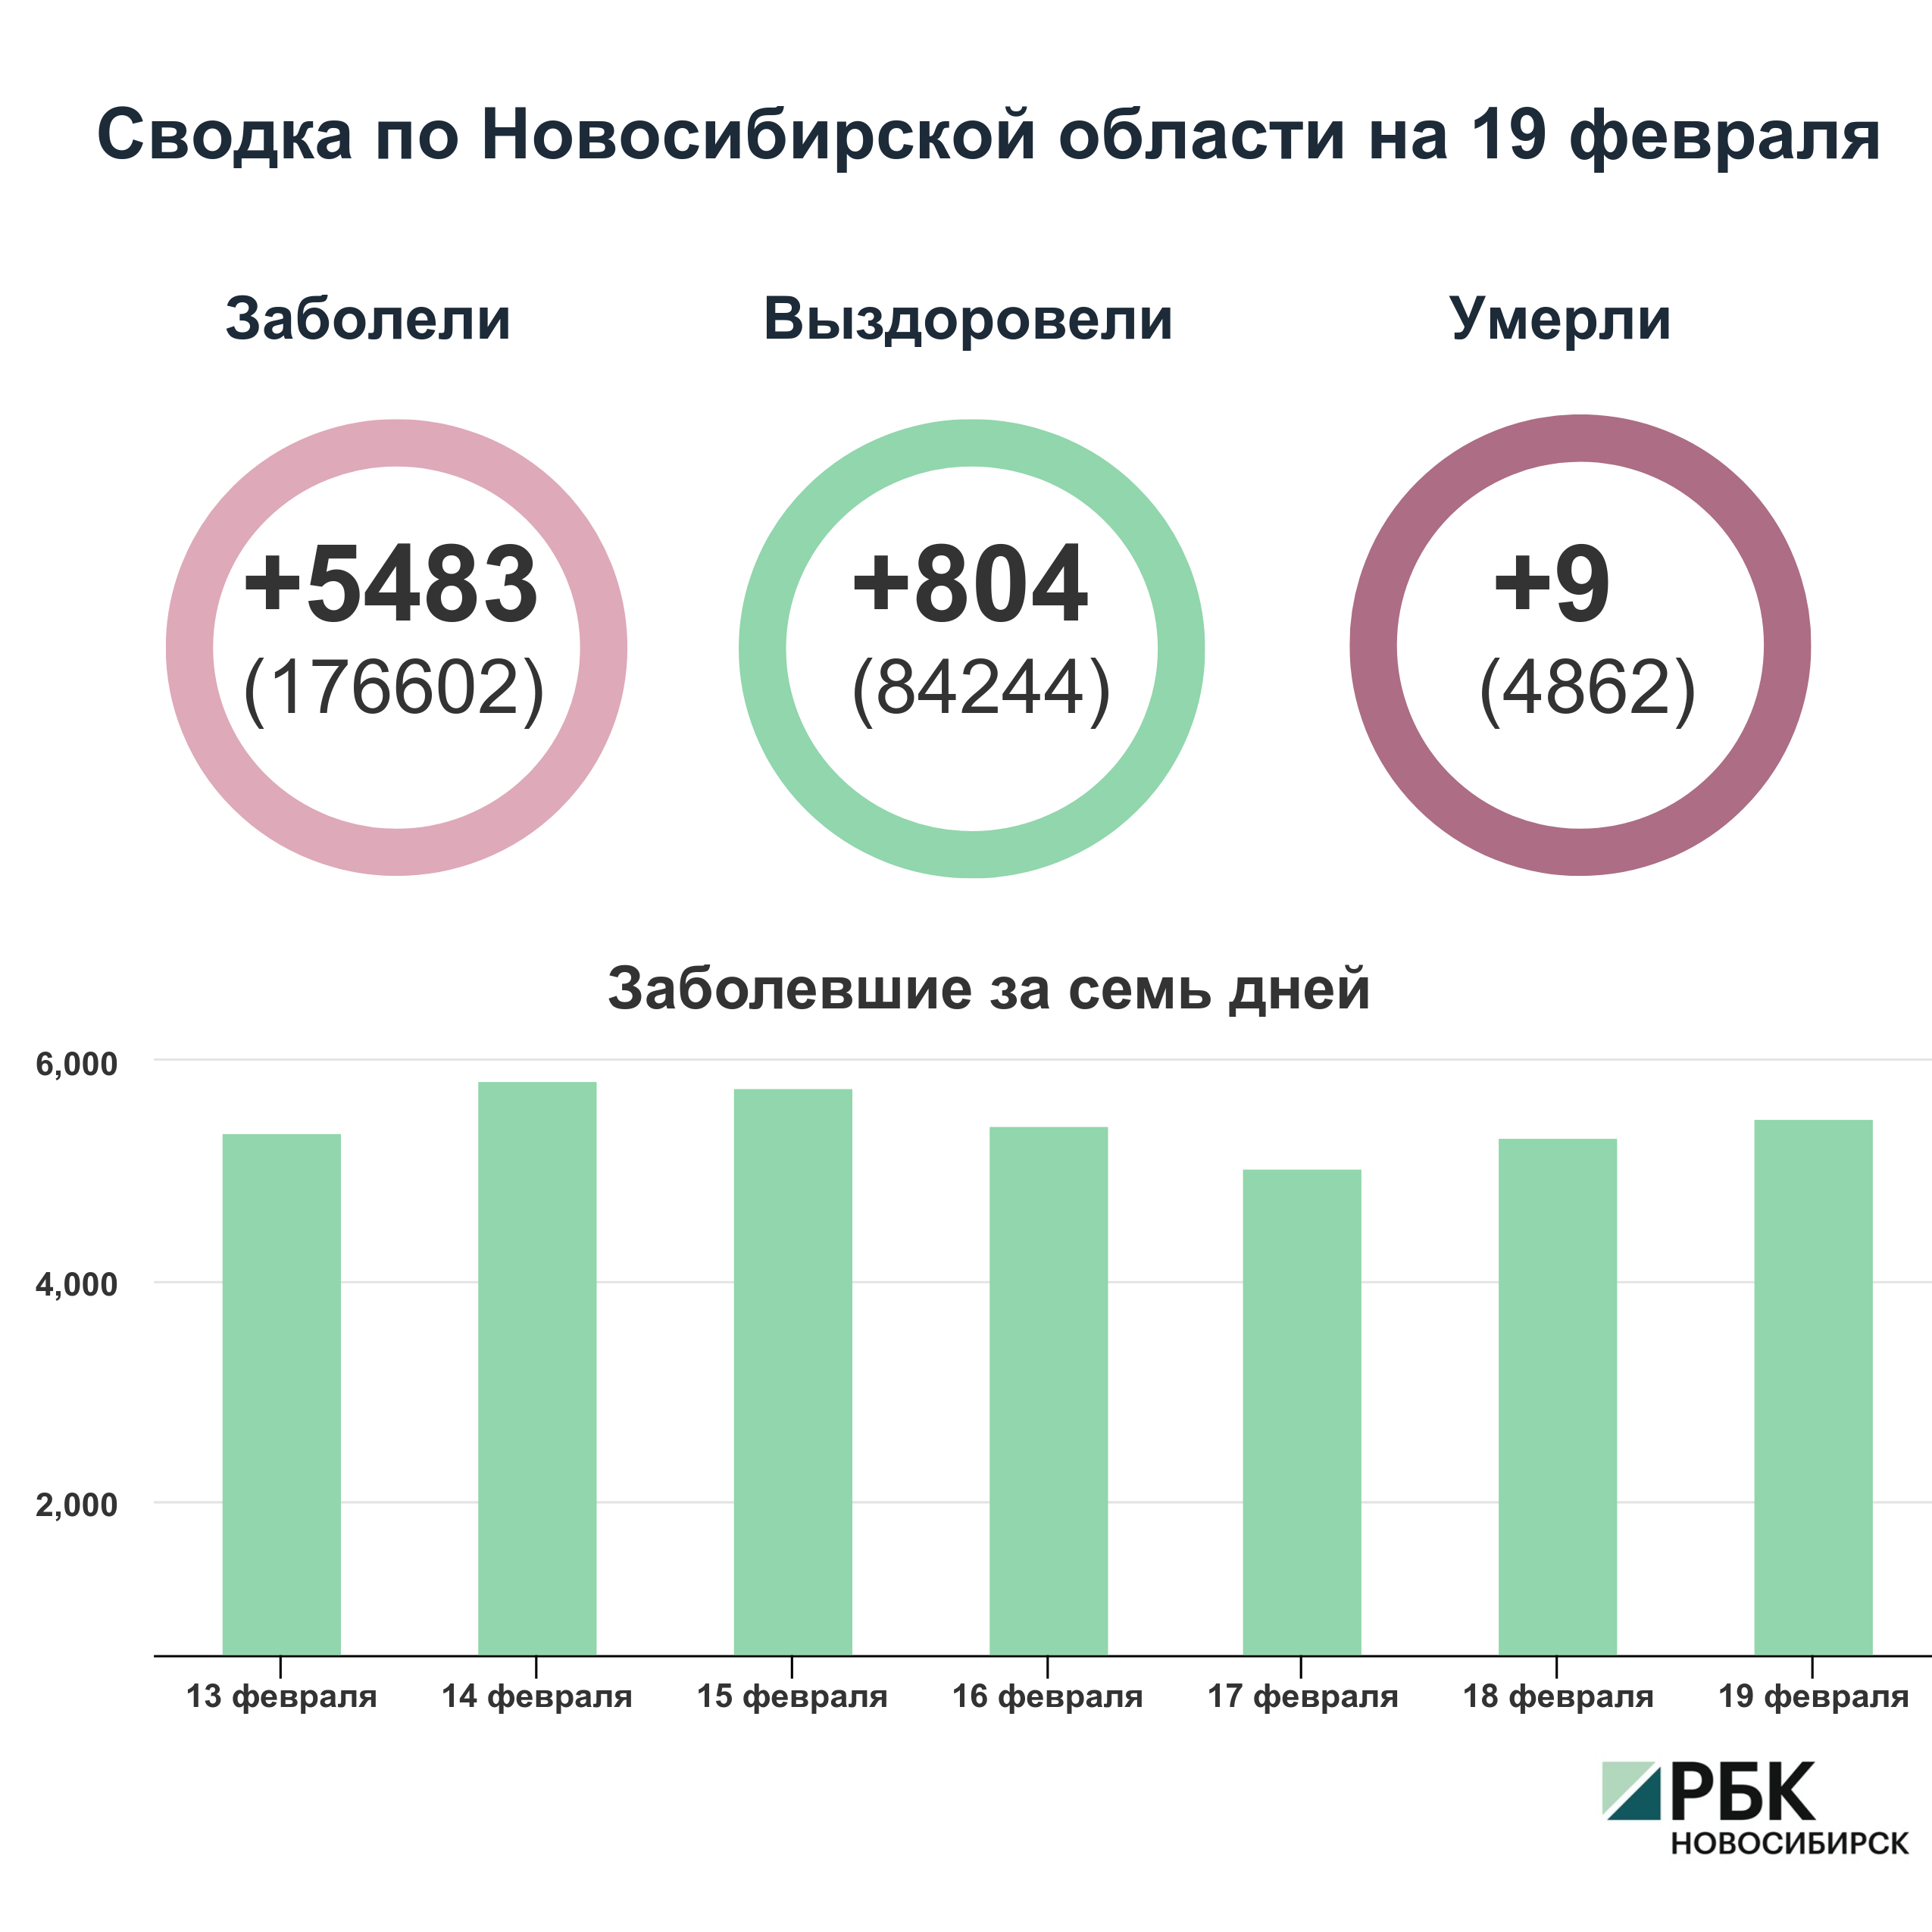 Коронавирус в Новосибирске: сводка на 19 февраля